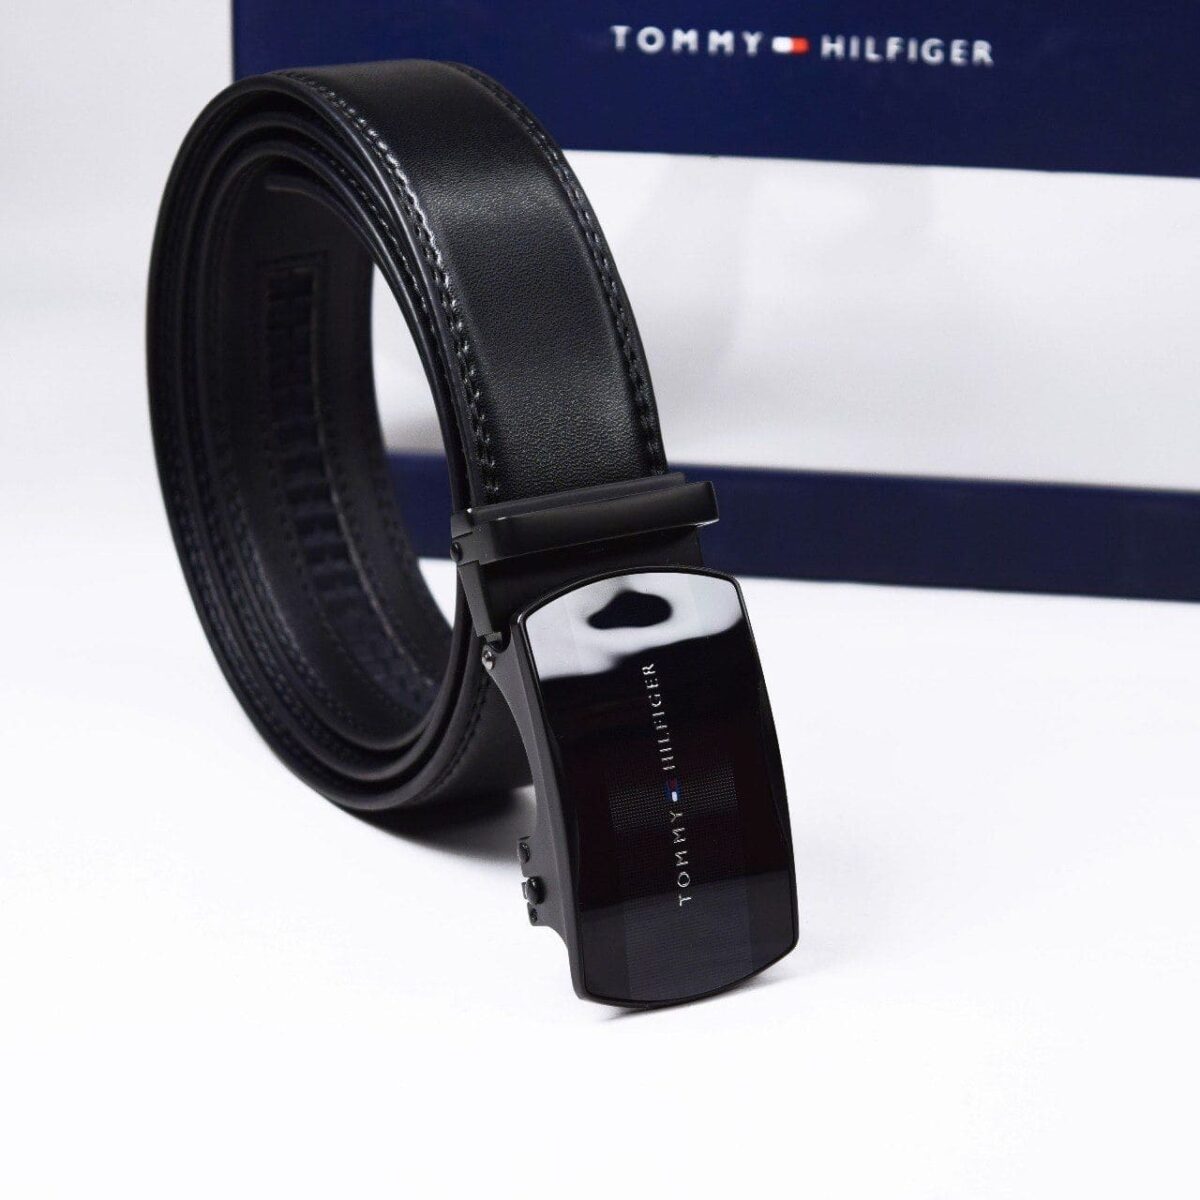 original-belt-tommy-hilfiger-in-egypt-for-men-black-leather-color-TH-egypt-original